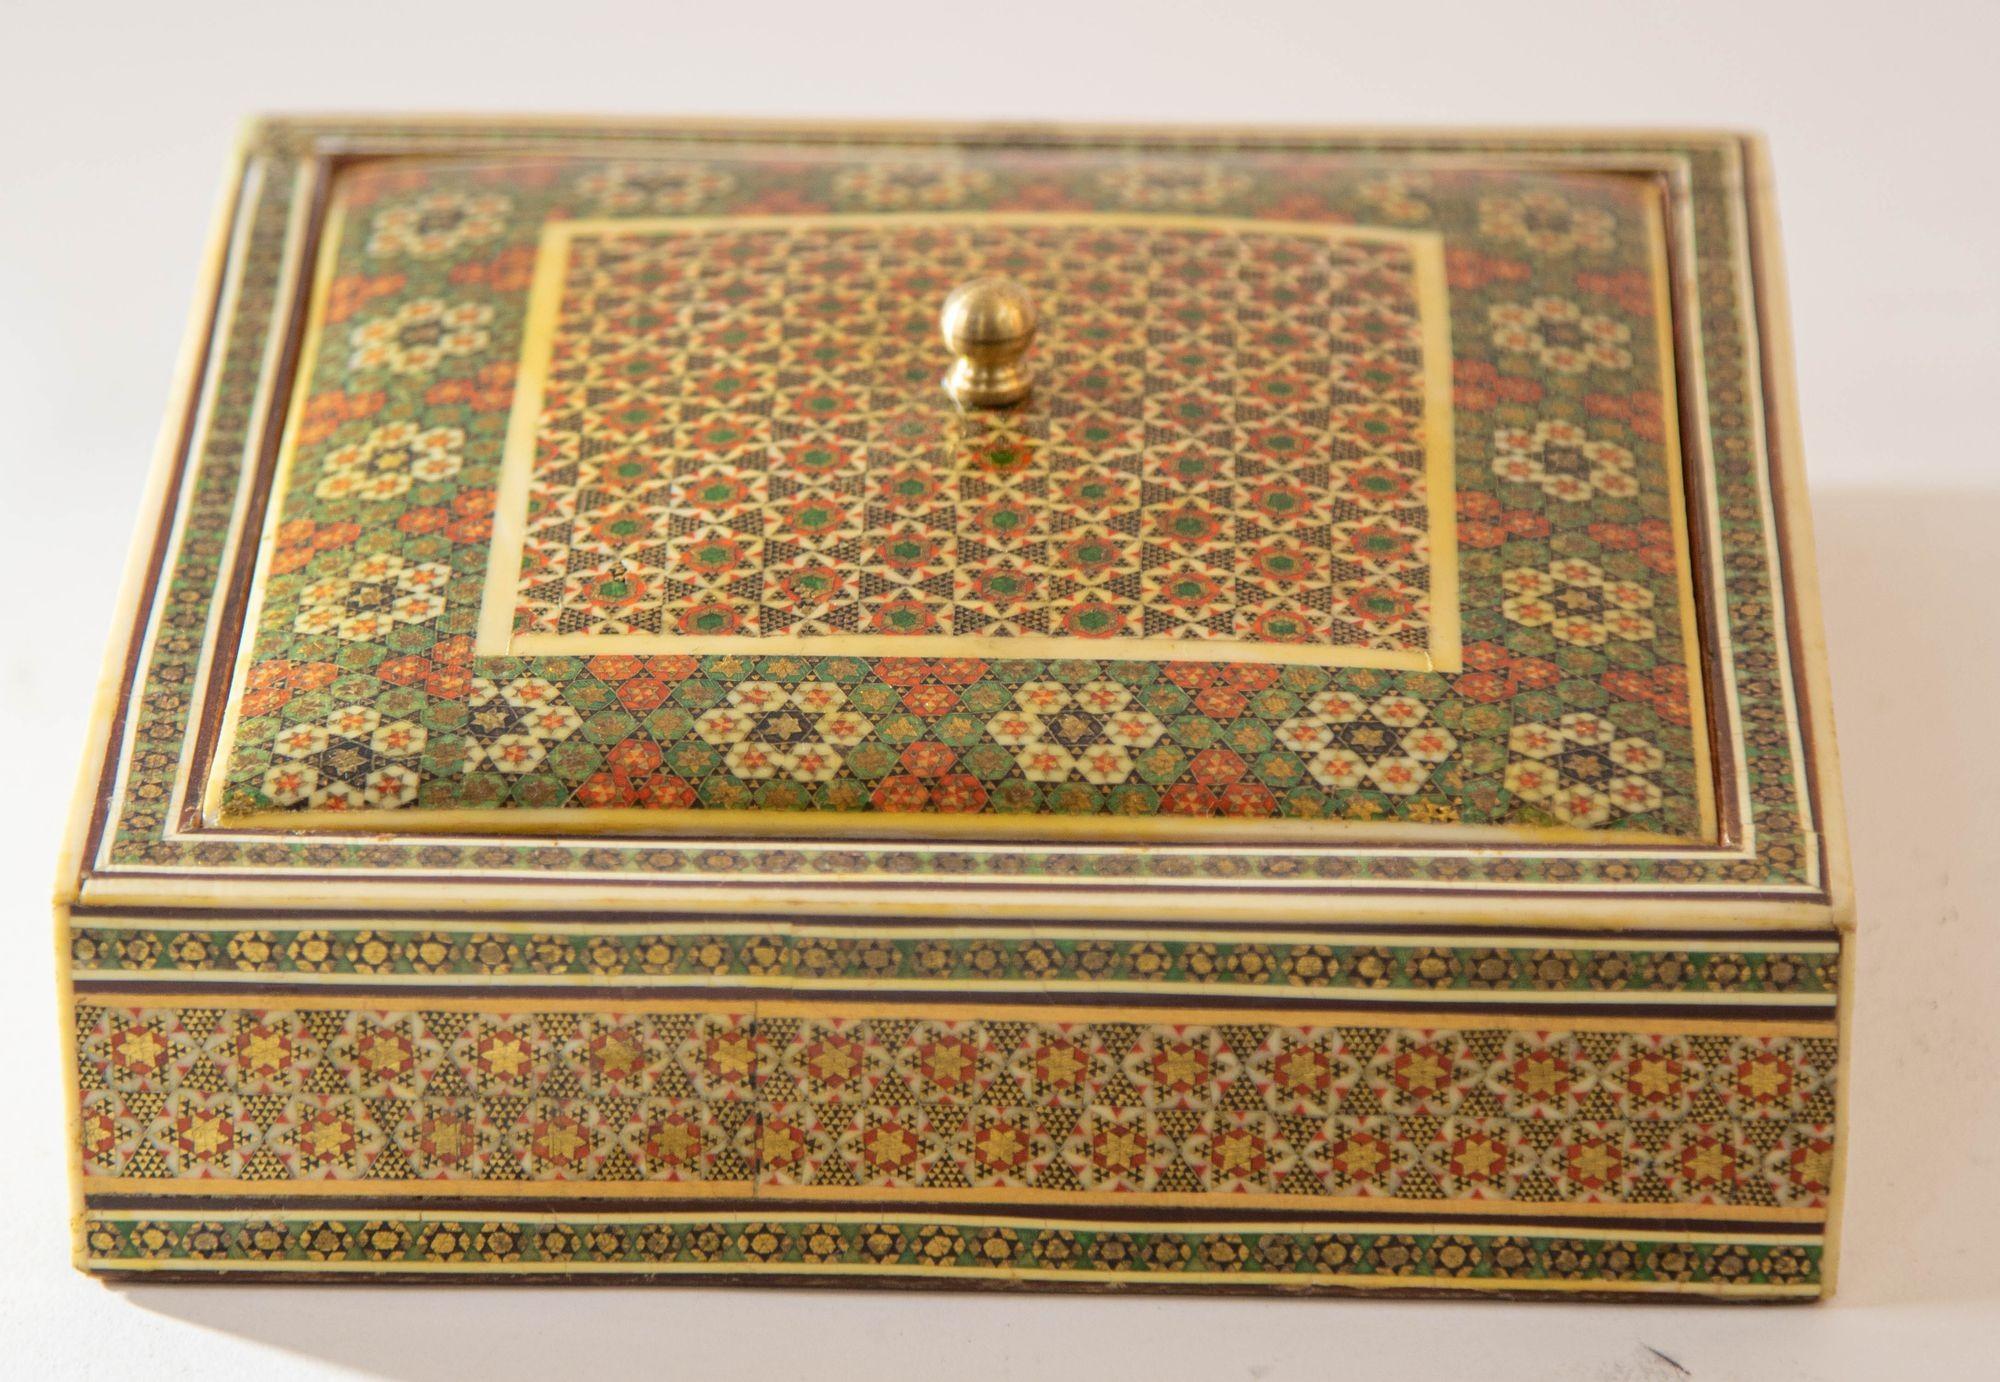 Boîte à bijoux des années 1950 en mosaïque micro-sadeli incrustée anglo-indienne.
DIMENSIONS : 7ʺW × 7ʺD × 2.5ʺH.
Boîte à bijoux avec couvercle en micro-mosaïque incrustée de style mauresque INDO-PERSAN.
Boîte anglo-indienne à incrustation complexe